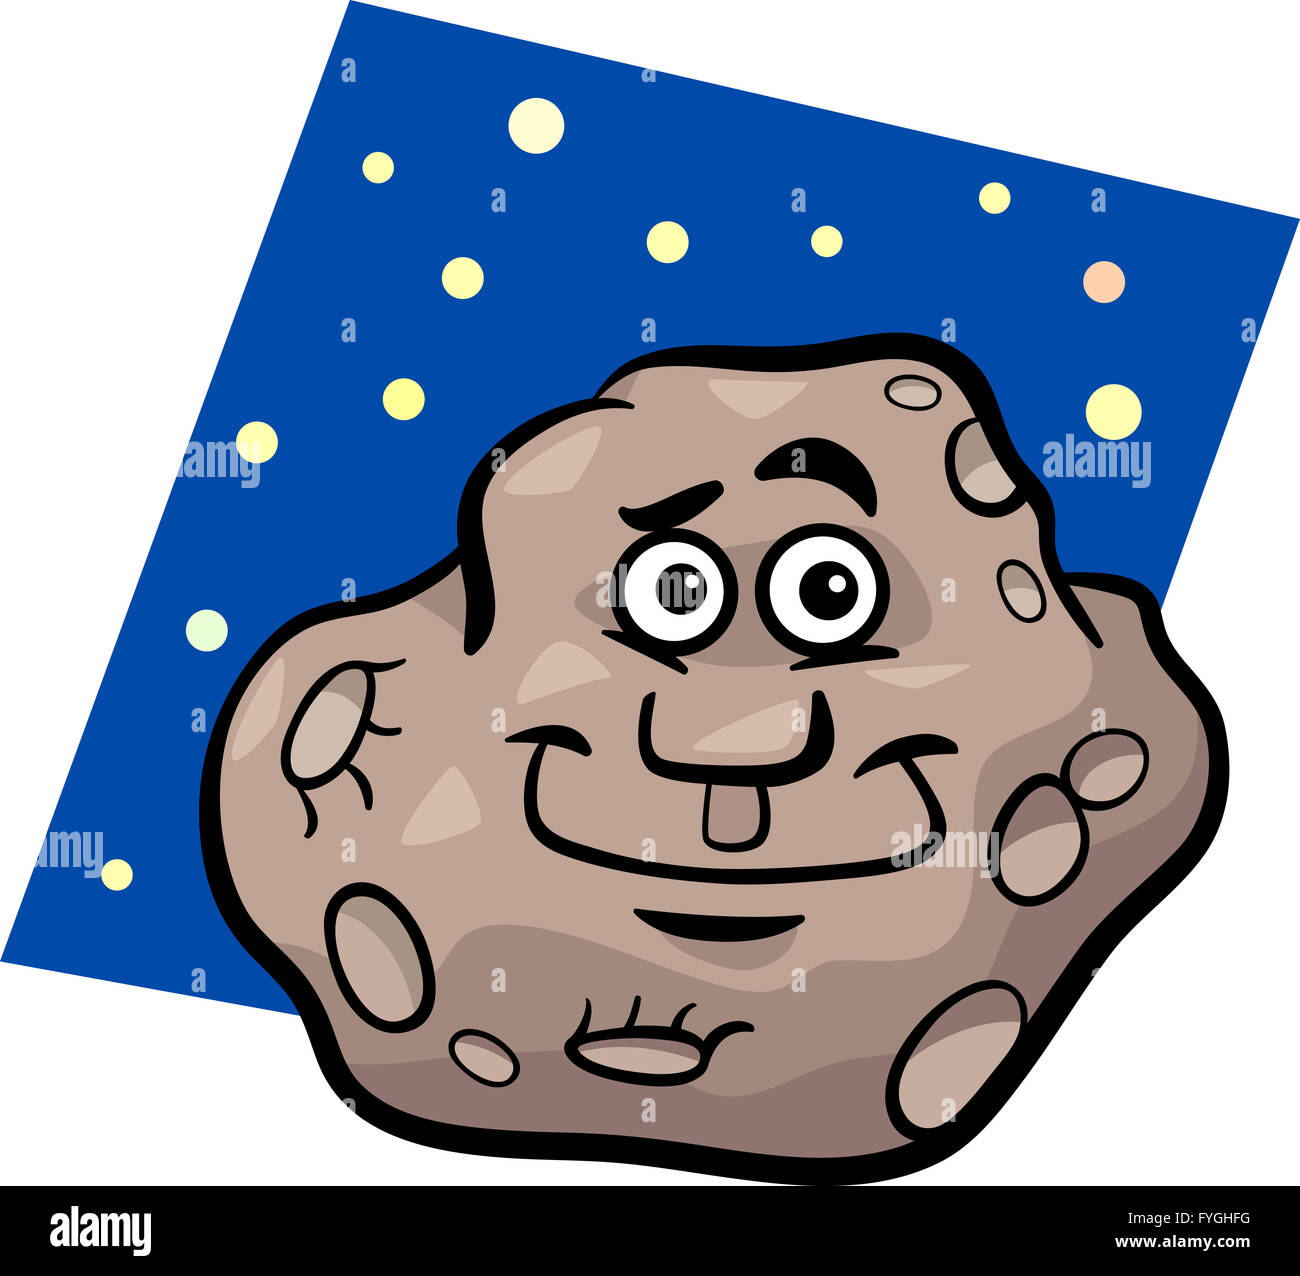 Asteroide dibujos animados fotografías e imágenes de alta resolución -  Página 3 - Alamy